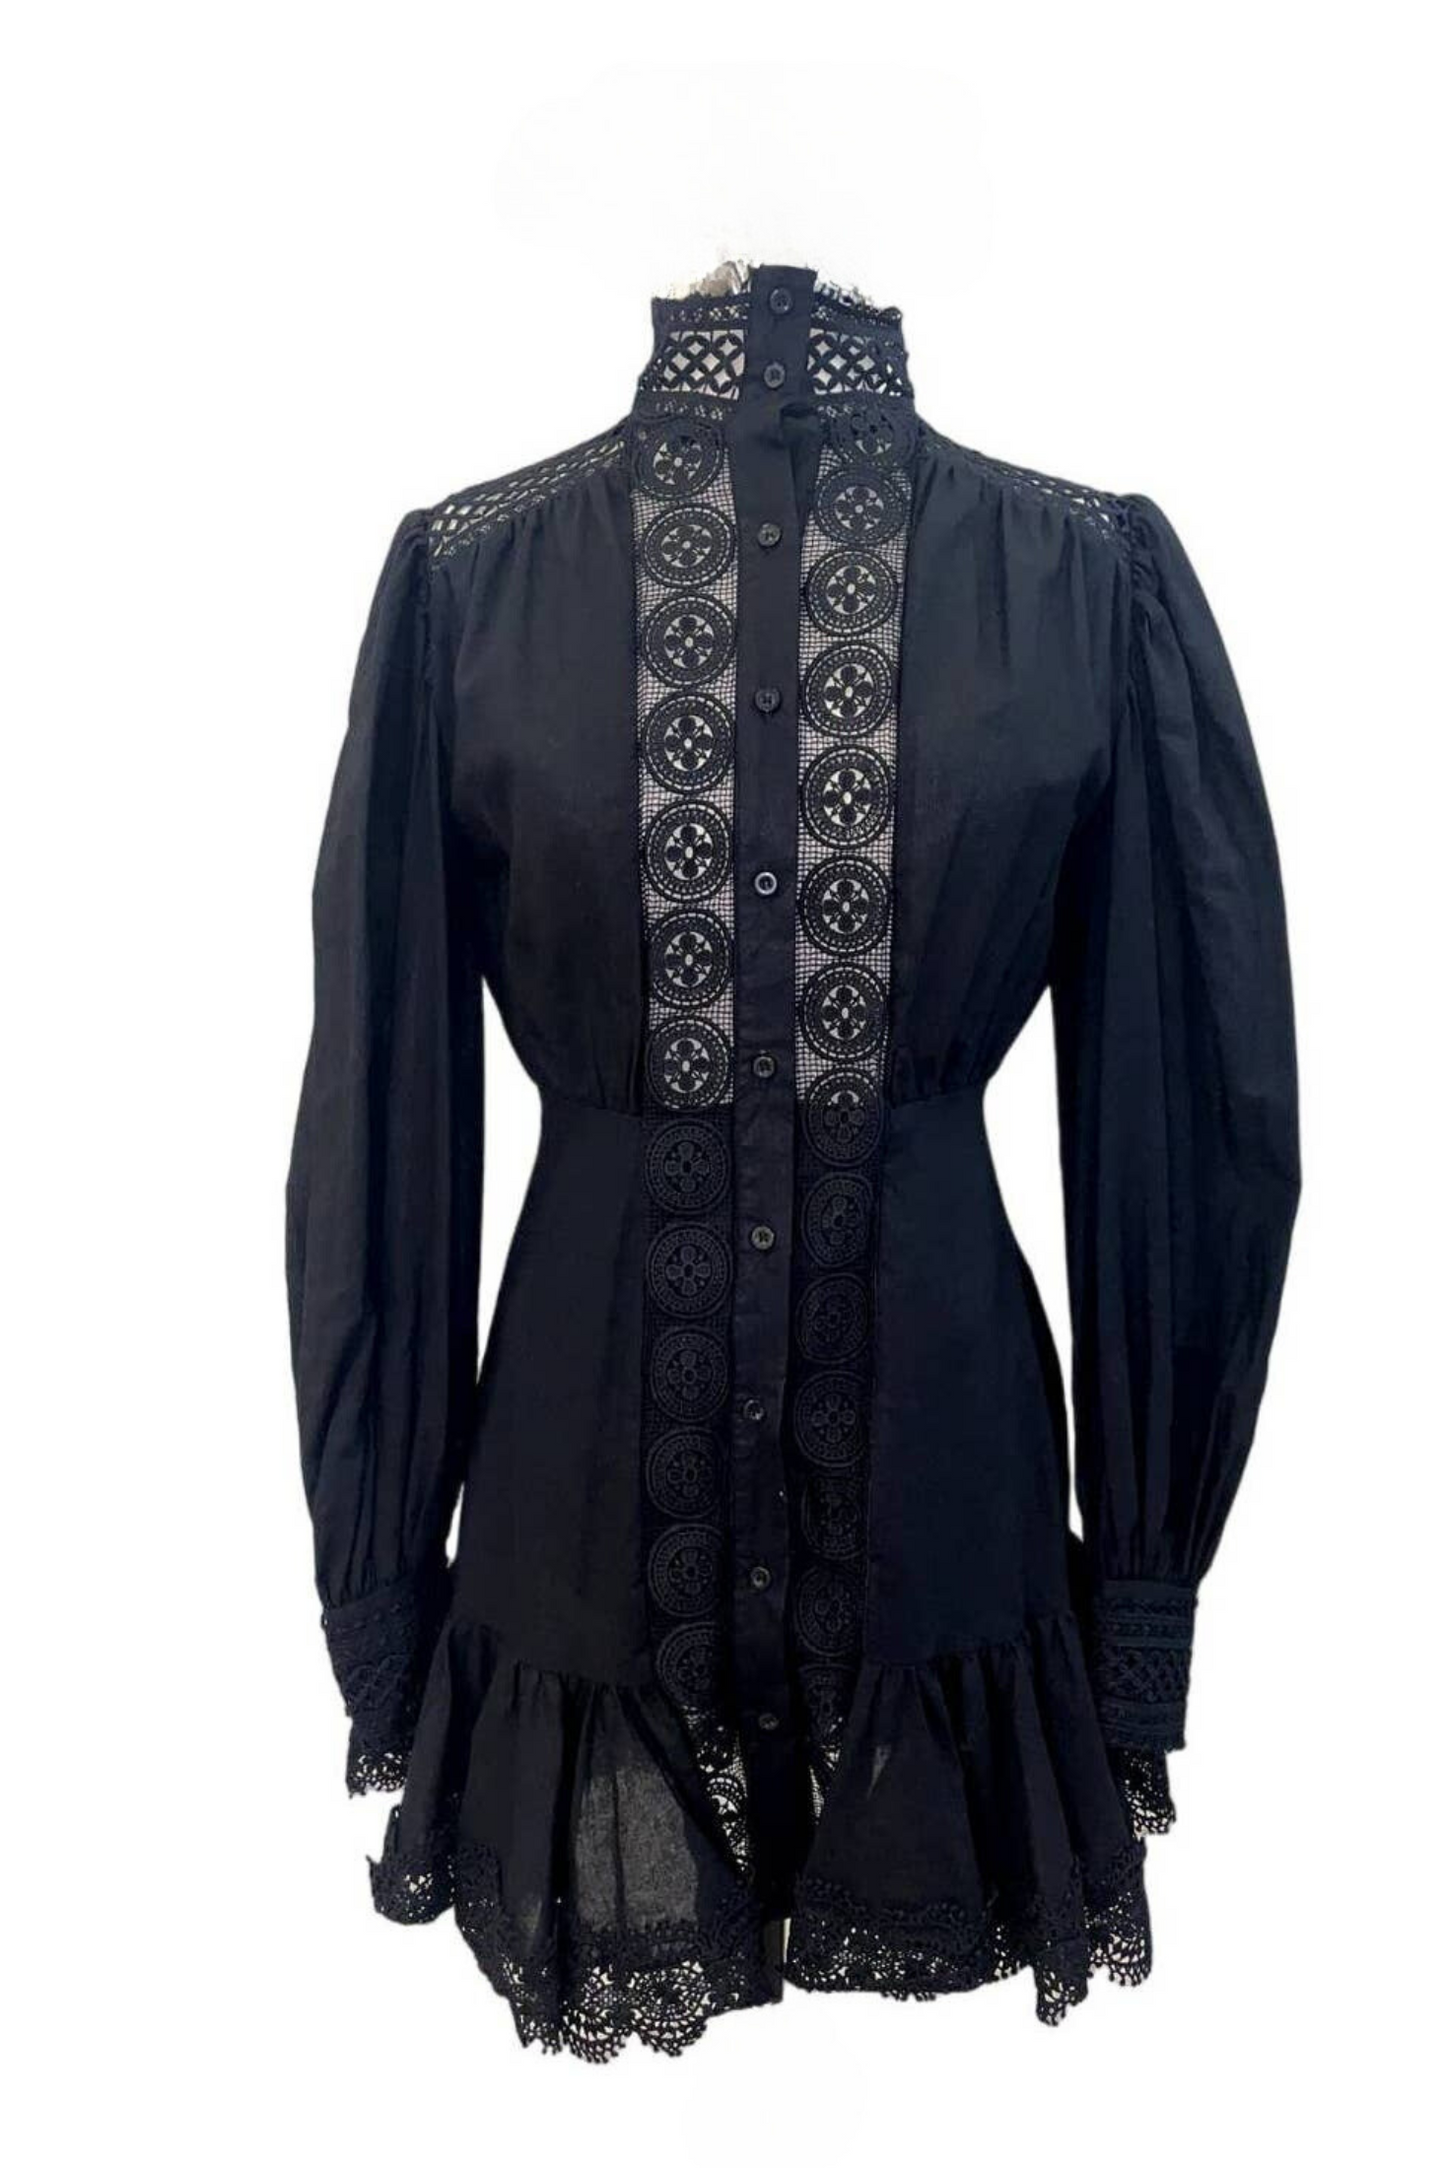 Weili Zheng Black Shirt Dress Size S